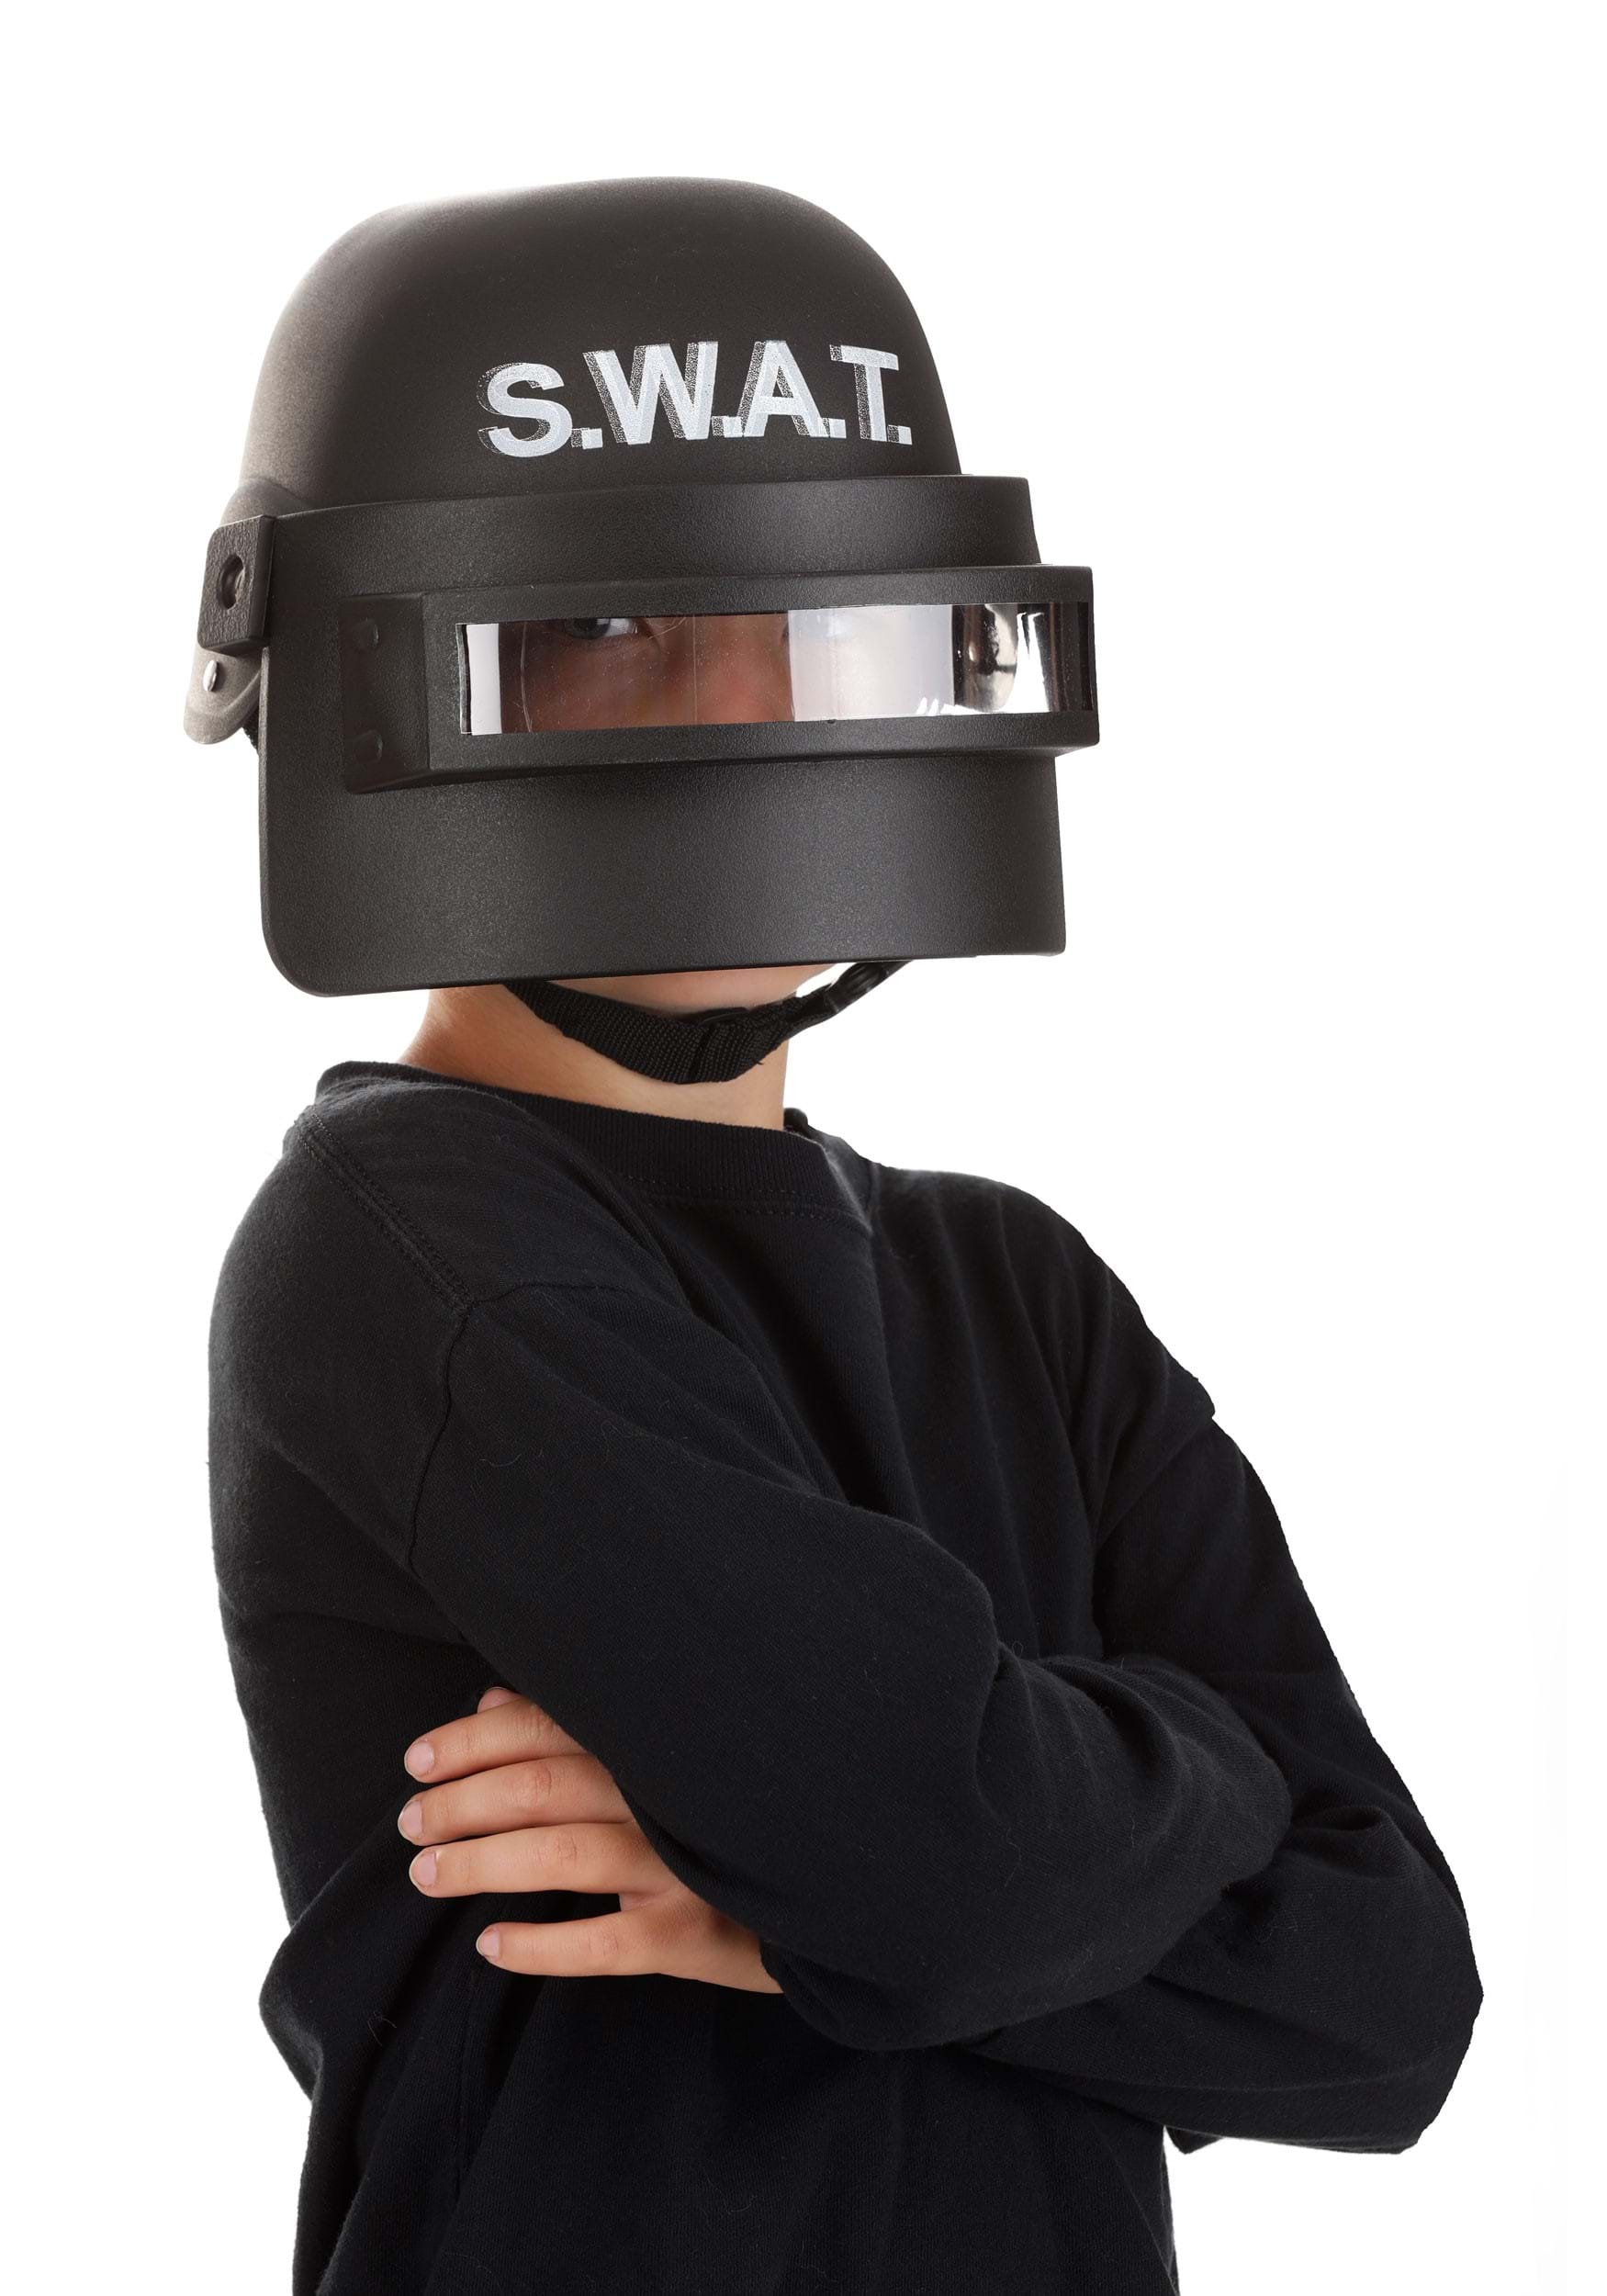 Child SWAT Costume Visor Helmet